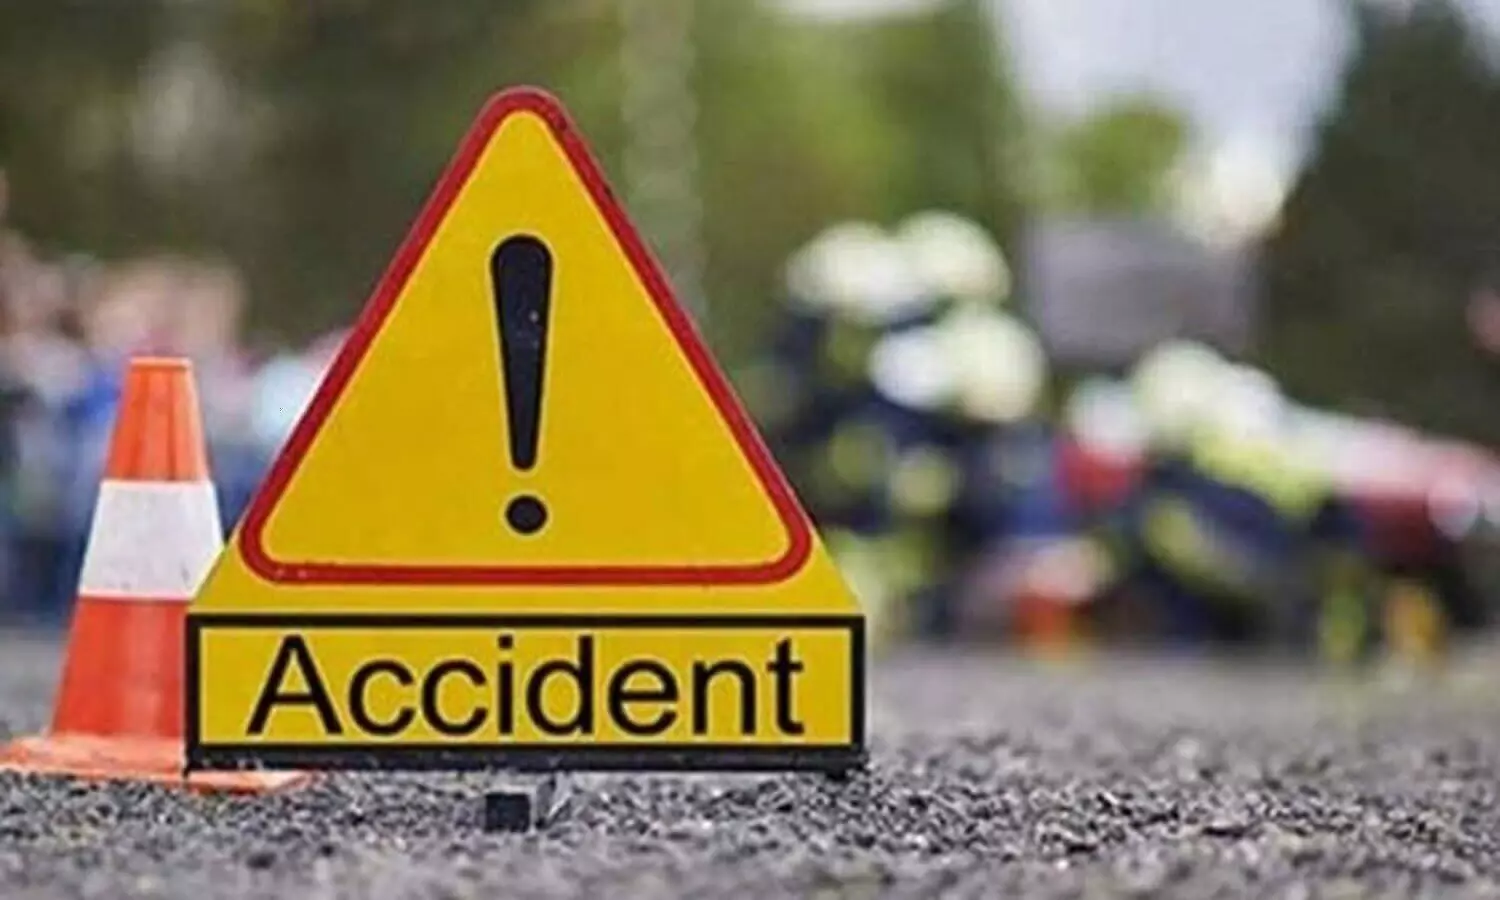 UP Accident News: उत्तर प्रदेश के इन जिलों में हुआ दर्दनाक हादसा, मासूम समेत कई लोगों की मौत